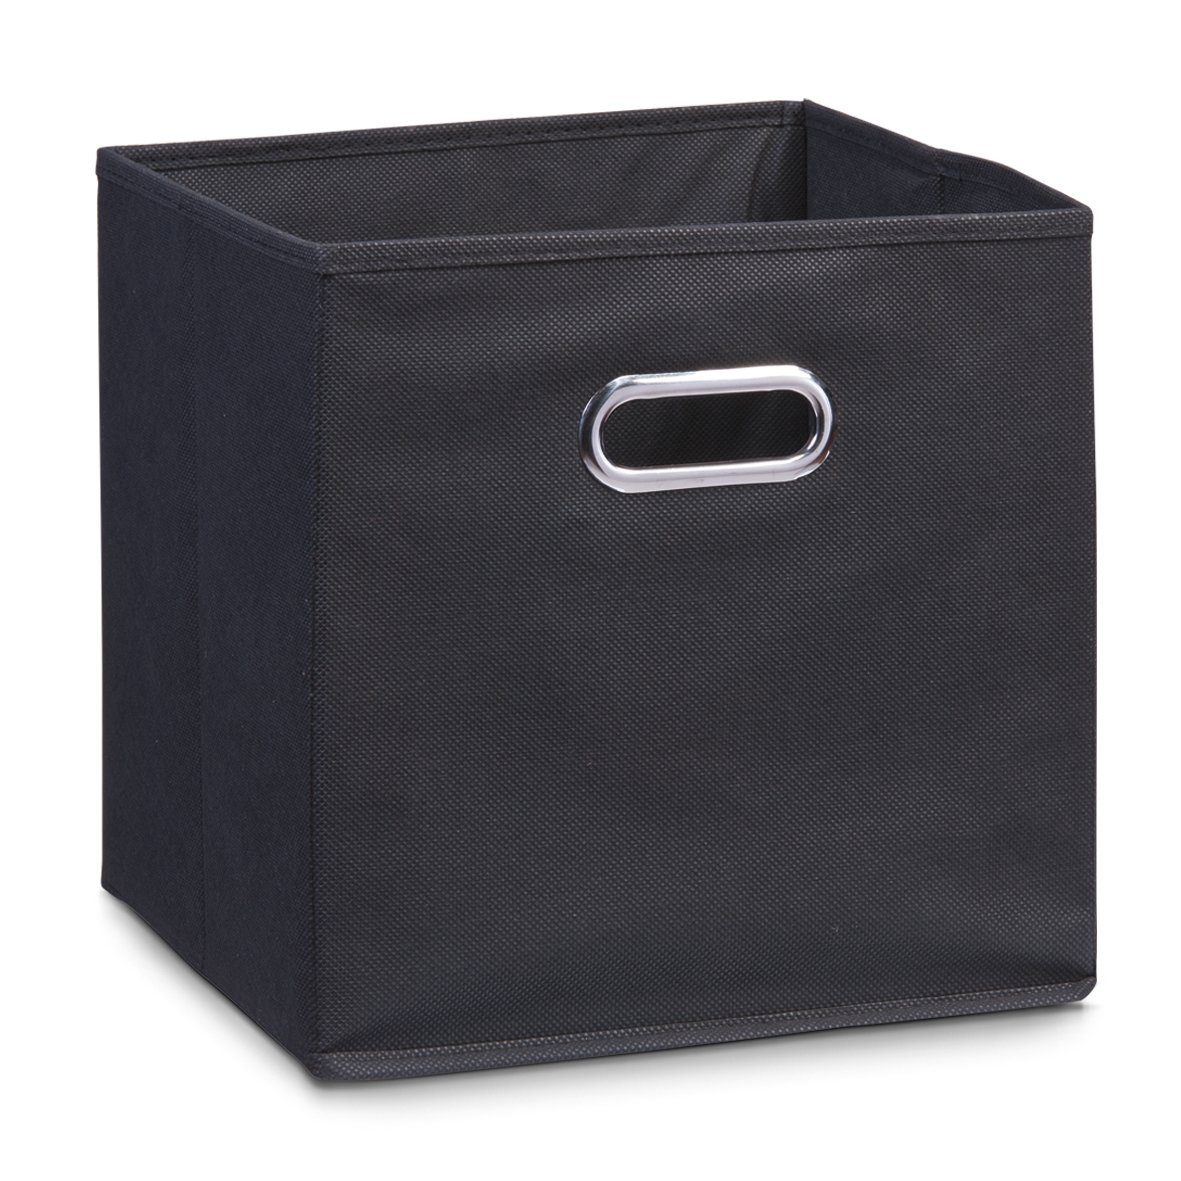 Zeller Present Aufbewahrungskorb Aufbewahrungsbox, Vlies, schwarz, 32 x 32 x 32 cm